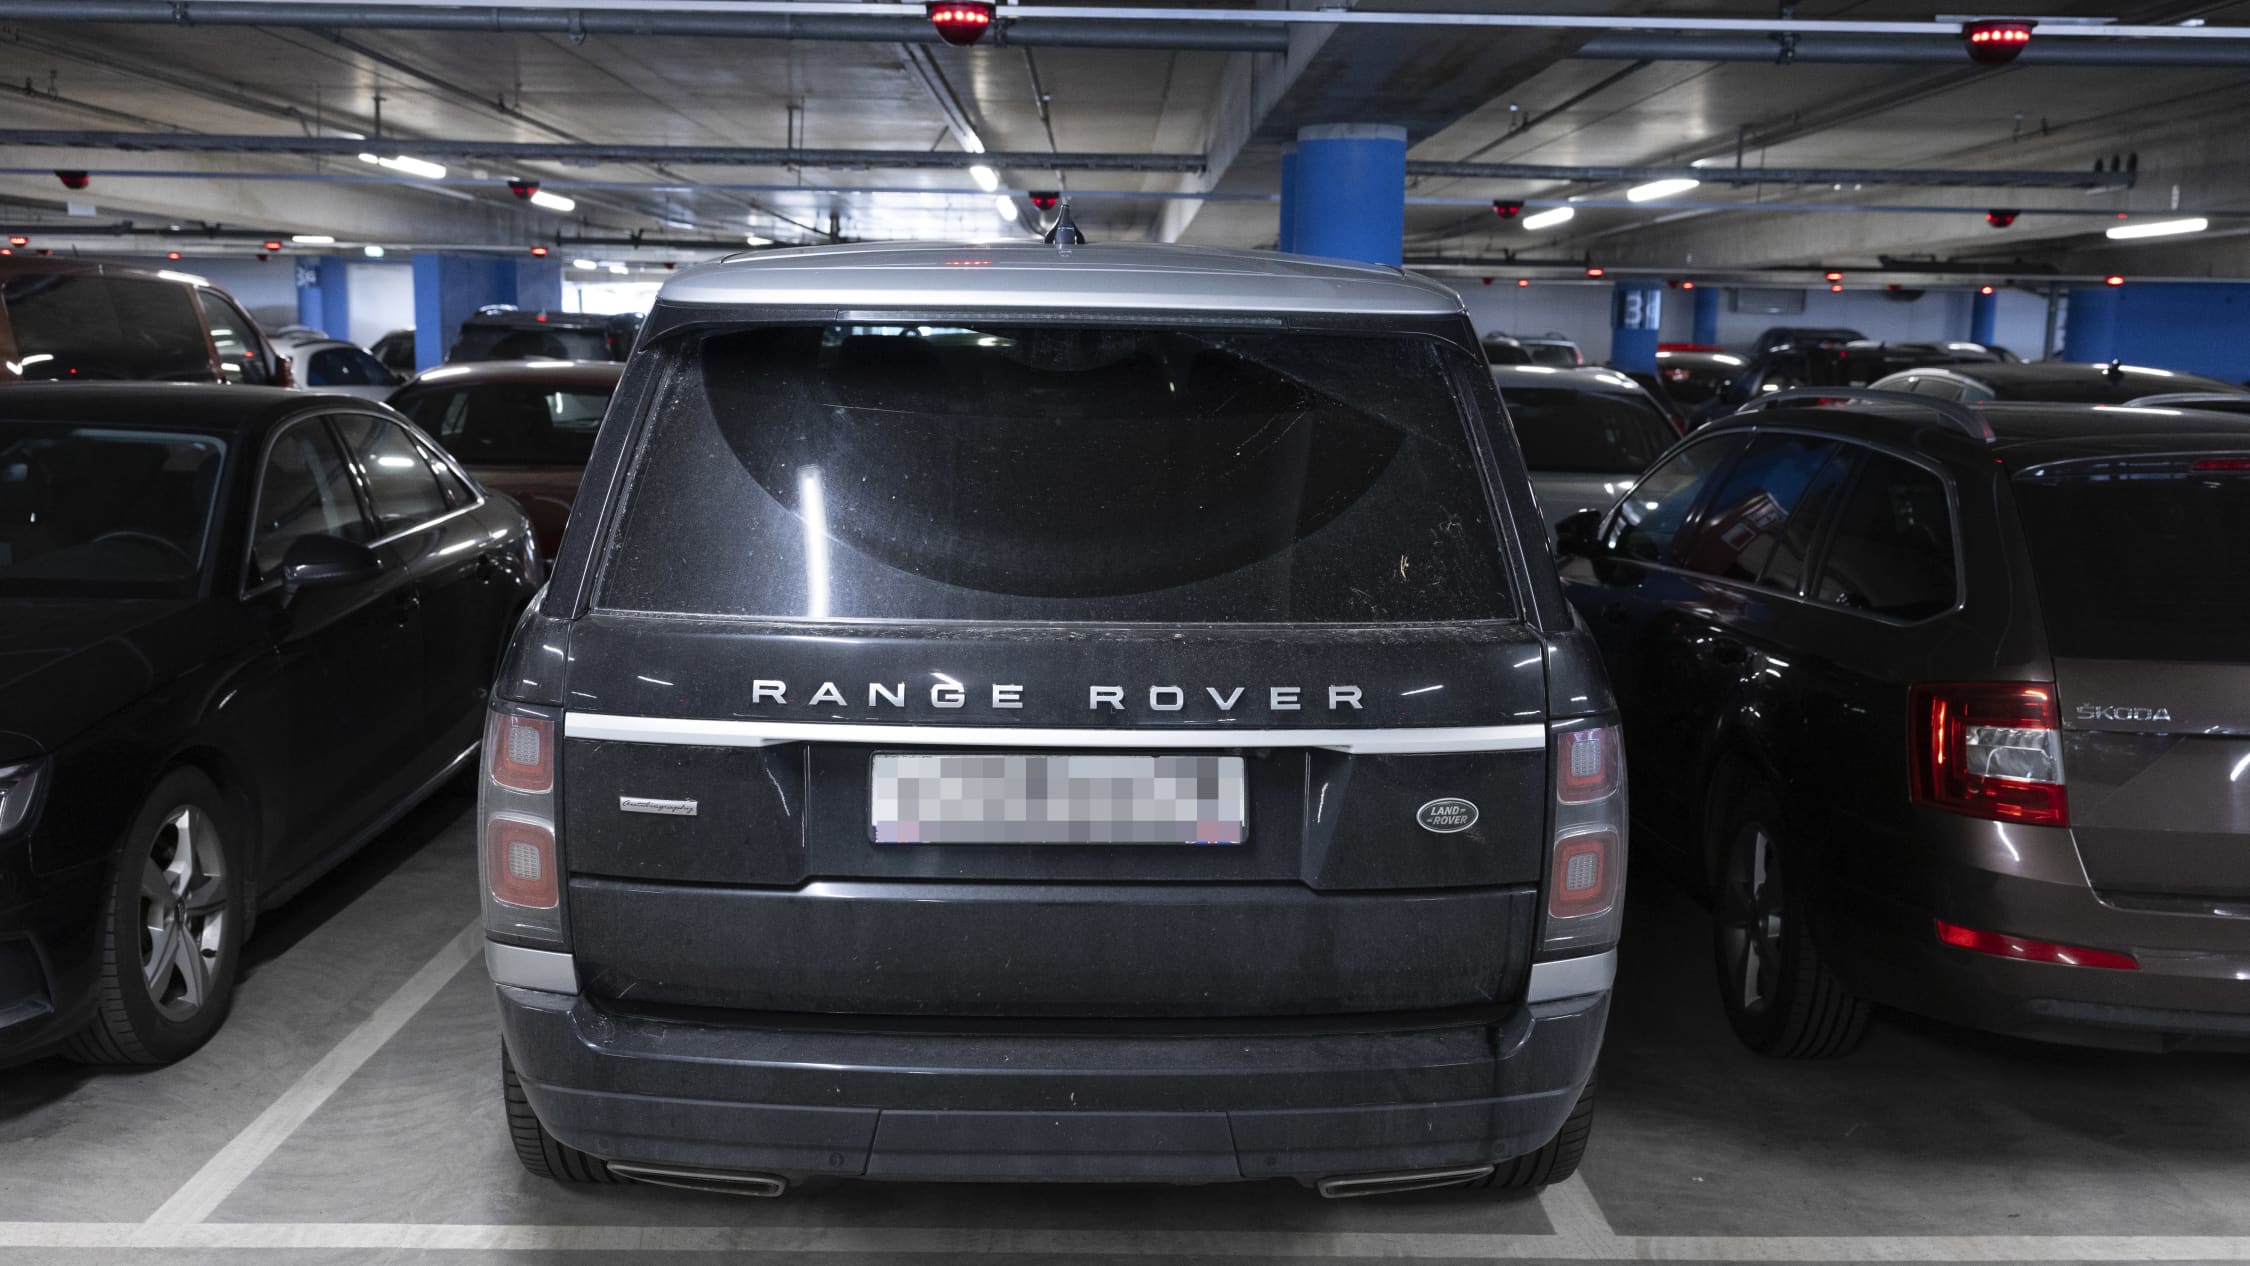 Venäläinen auto (Land Rover) pysäköitynä Helsinki–Vantaan lentoasemalla.